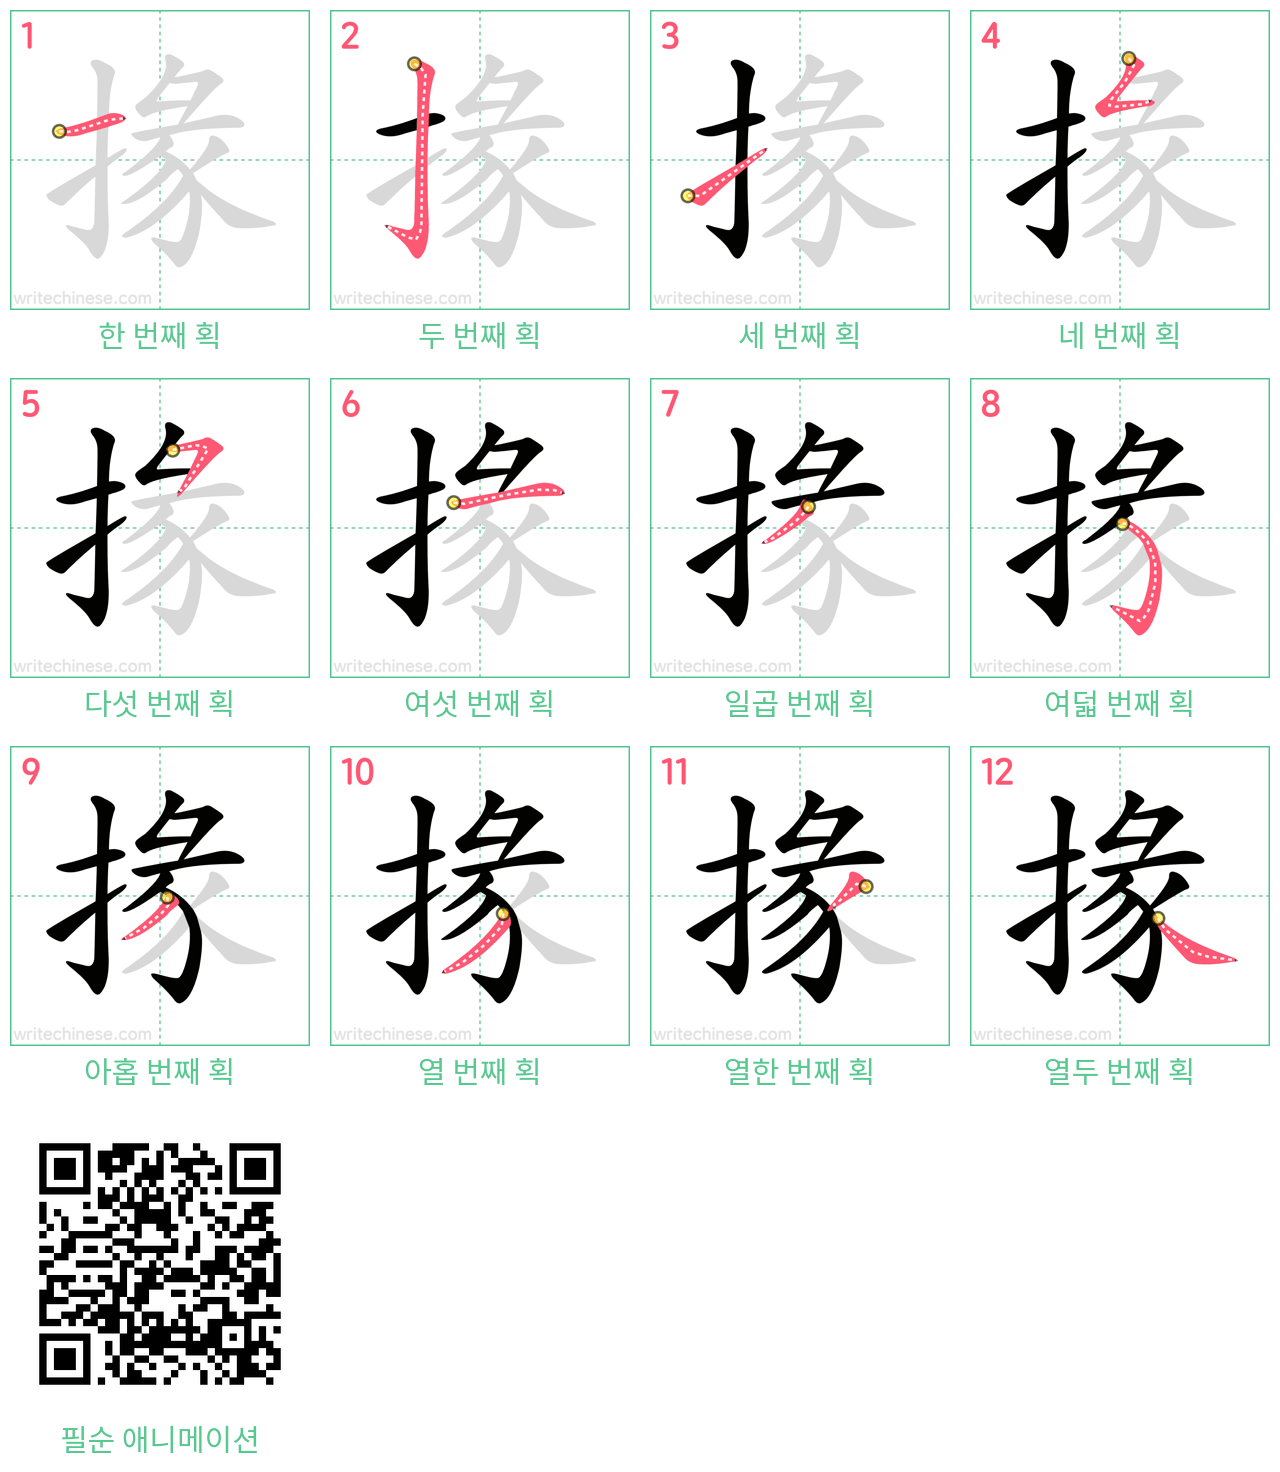 掾 step-by-step stroke order diagrams